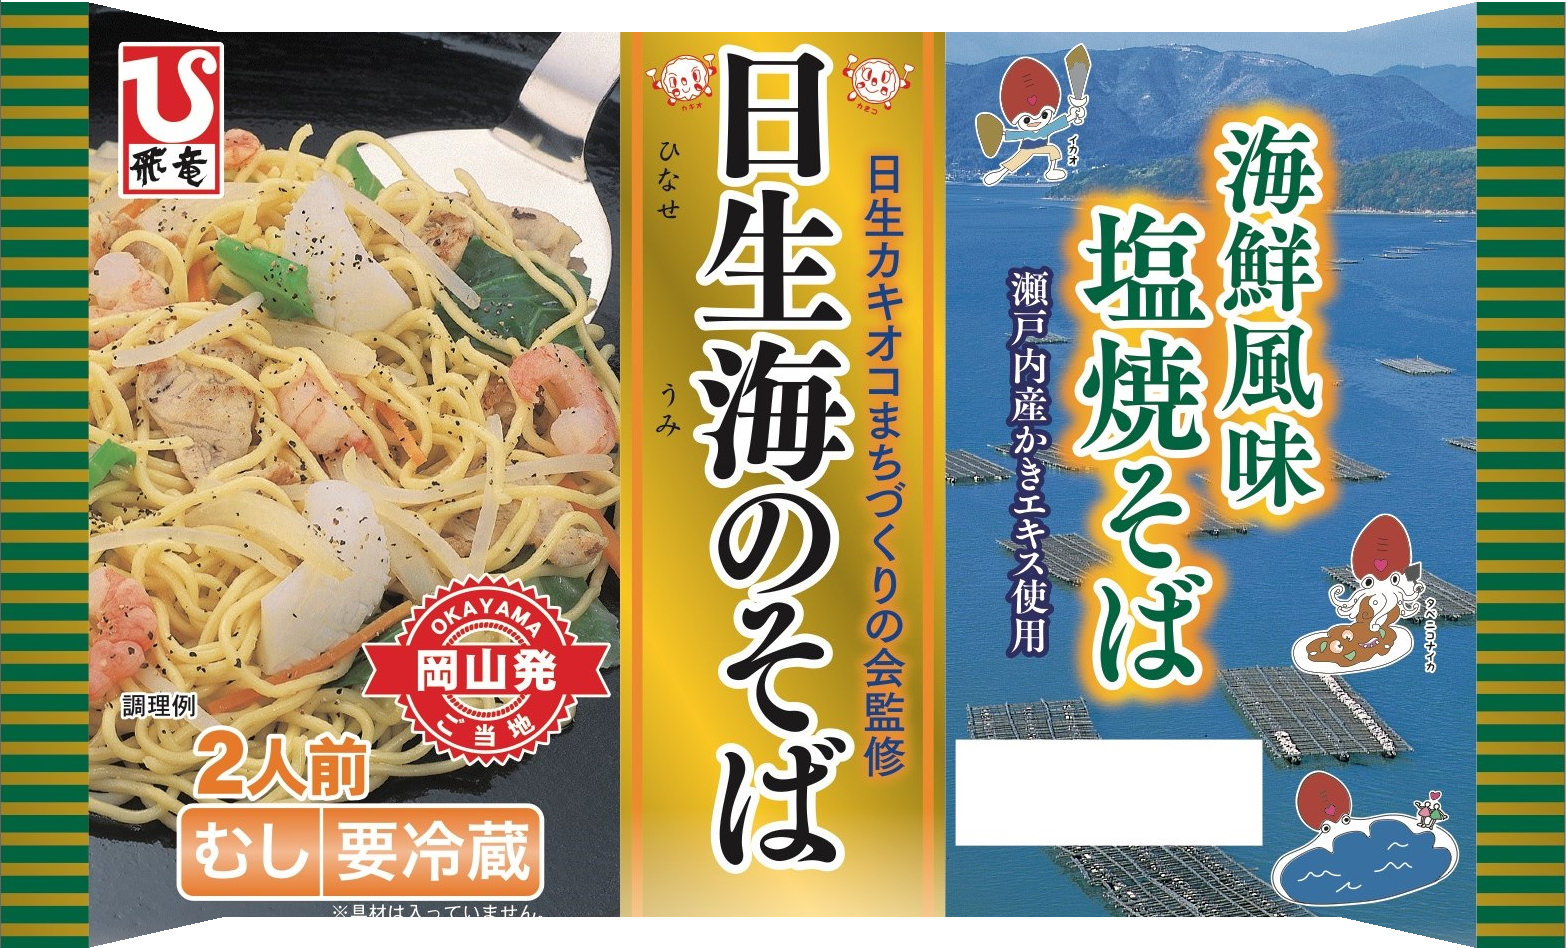 横浜馬車道に接待、記念日に重宝する高級鮨新店オープン
～熟練の鮨と和食の職人が織り成す旬の品々に舌鼓～